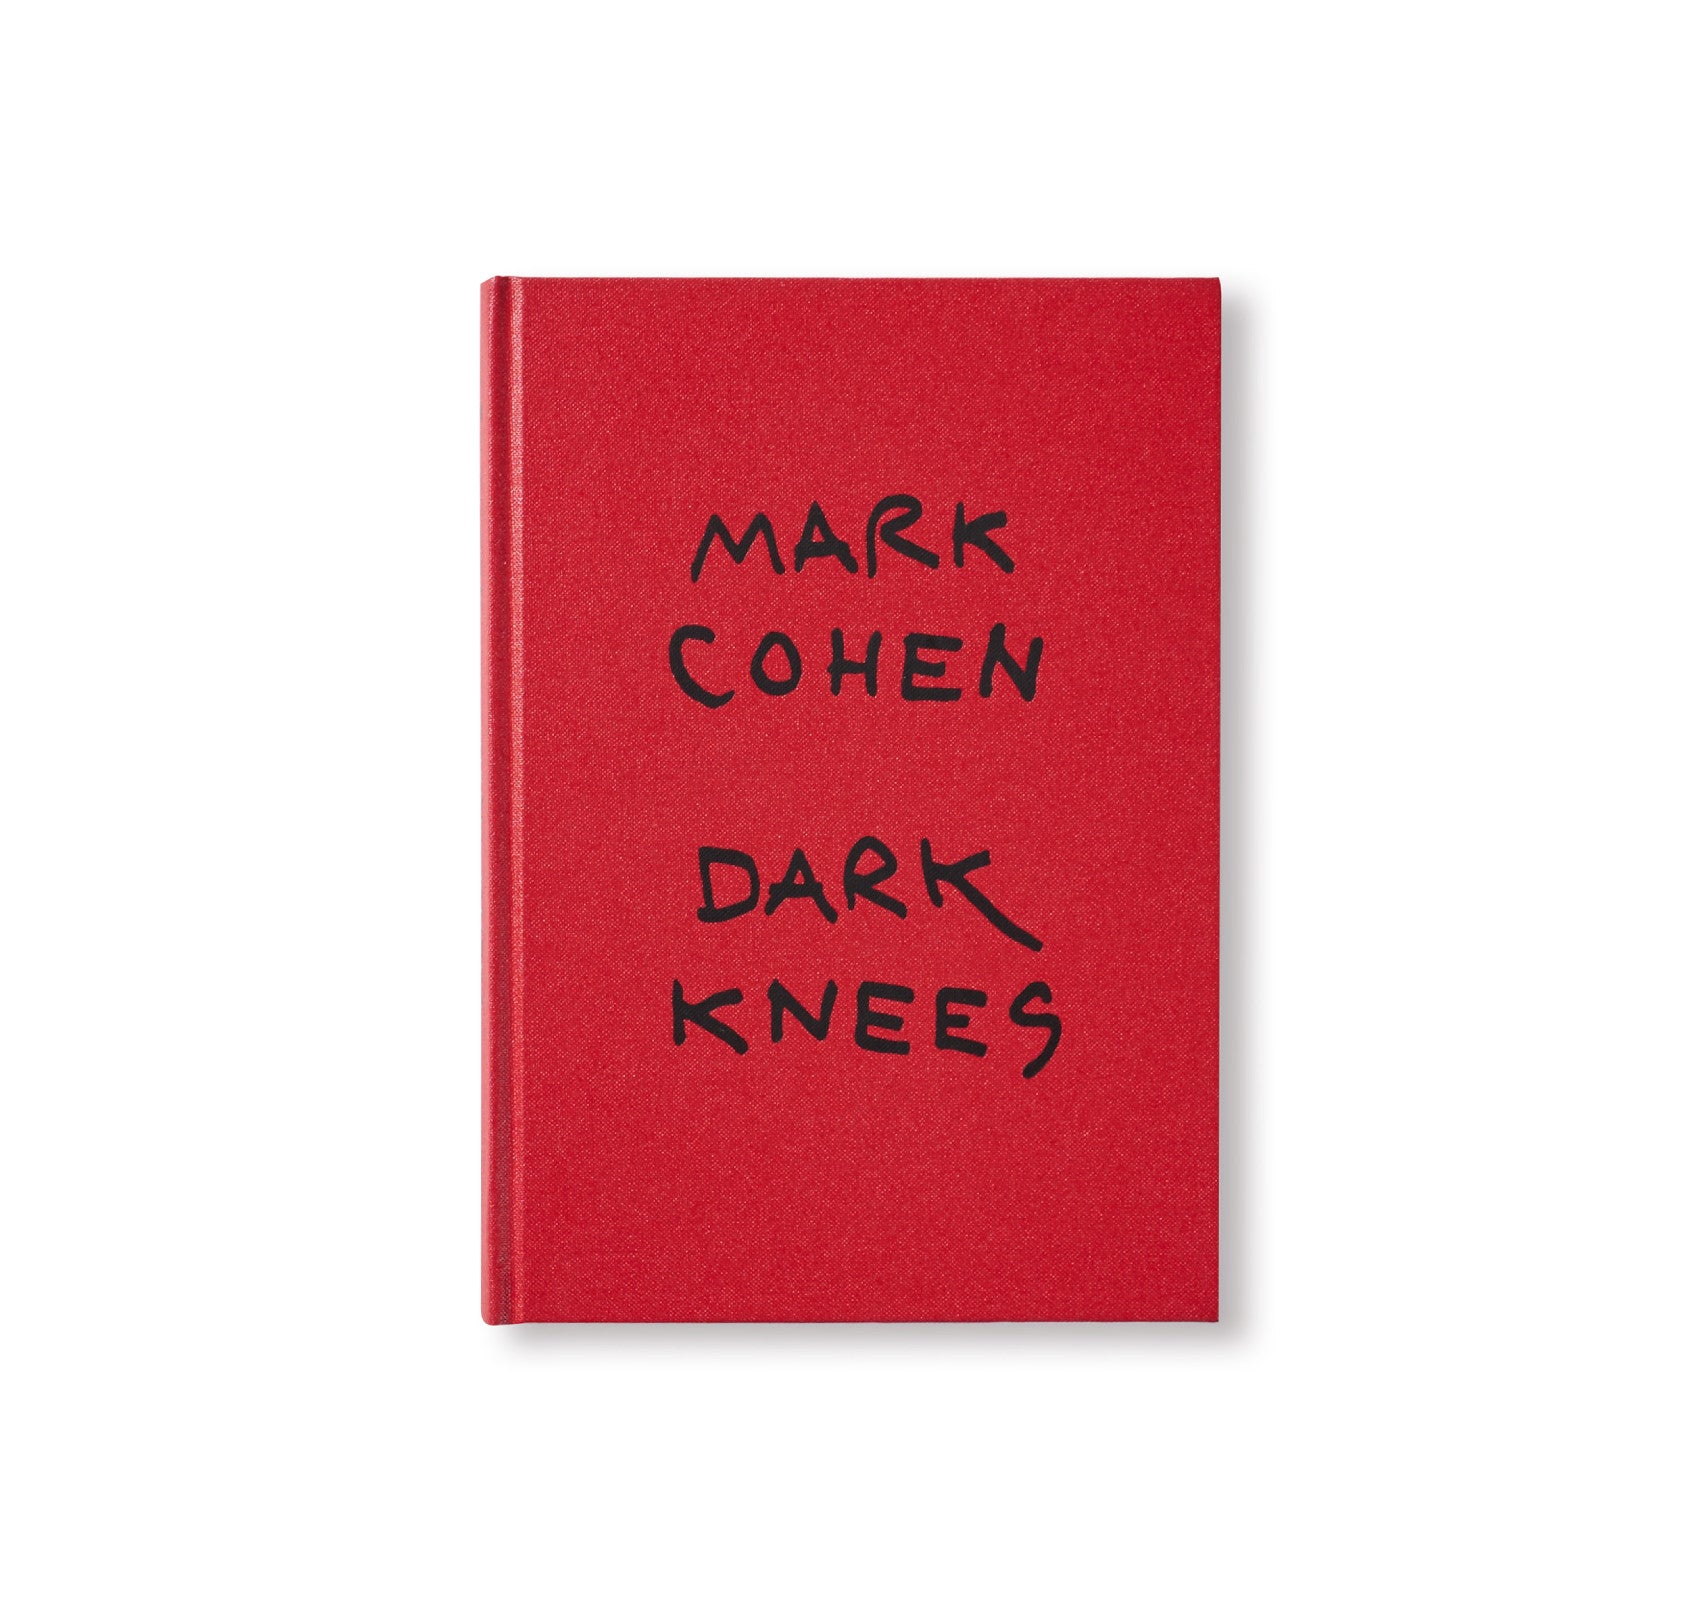 DARK KNEES by Mark Cohen